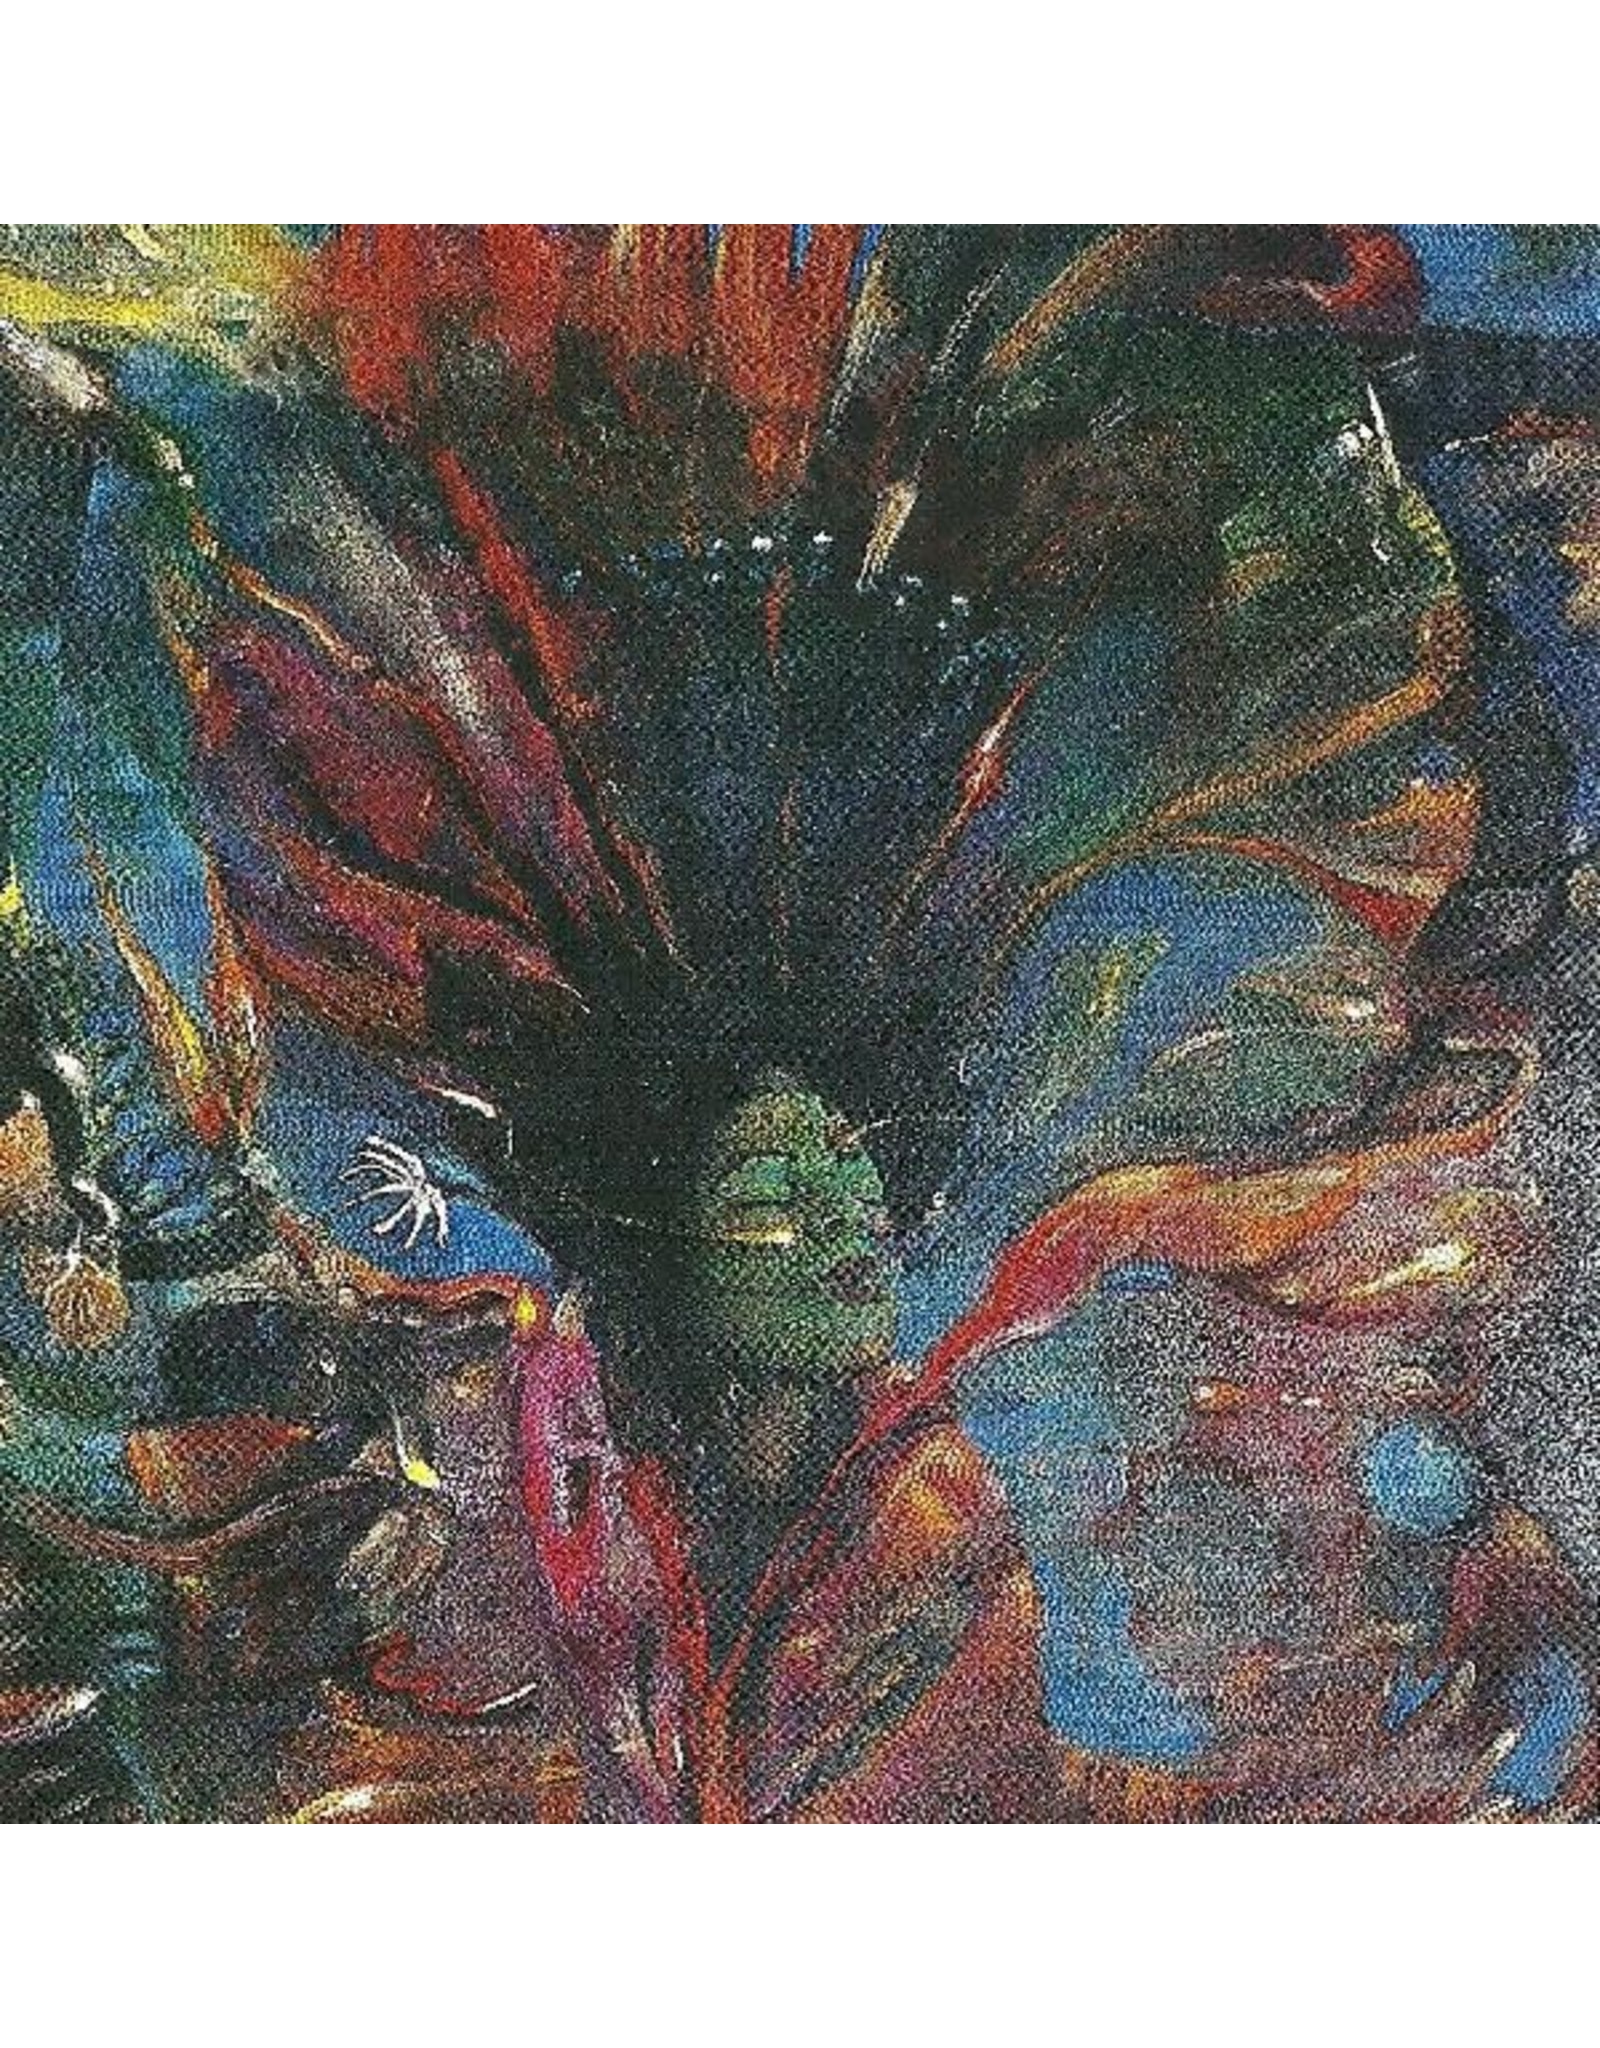 New Vinyl Byard Lancaster - My Pure Joy LP